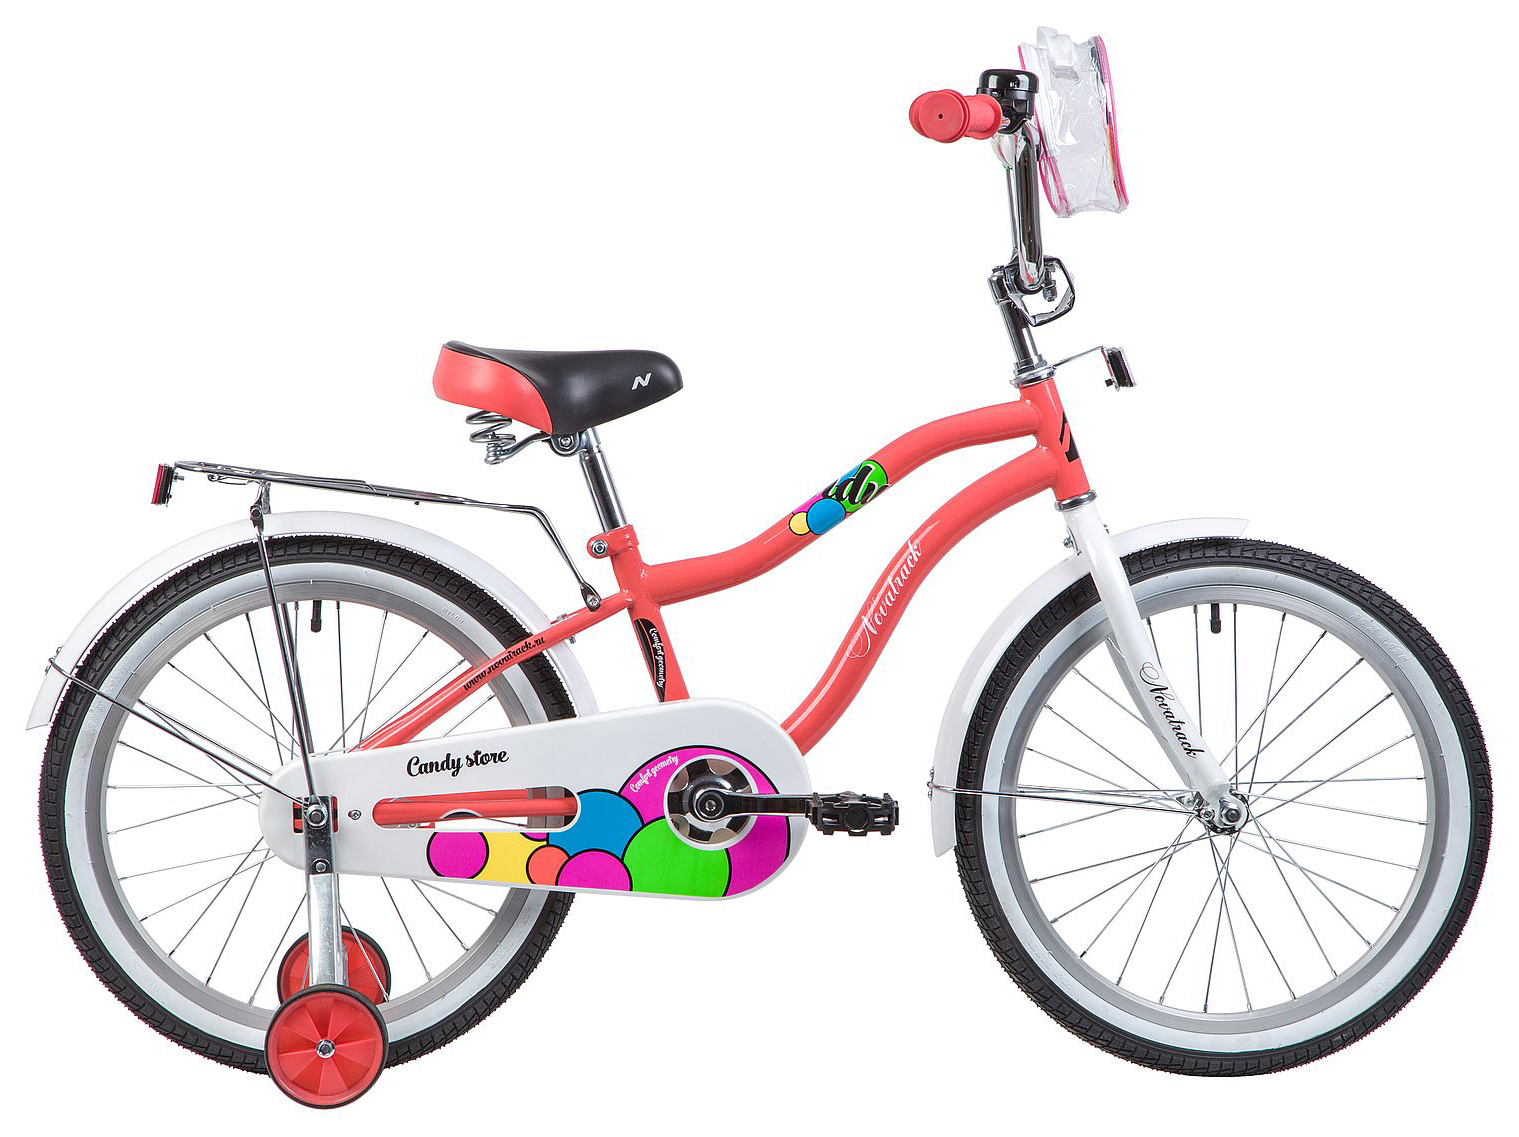  Отзывы о Детском велосипеде Novatrack Candy 20 2019